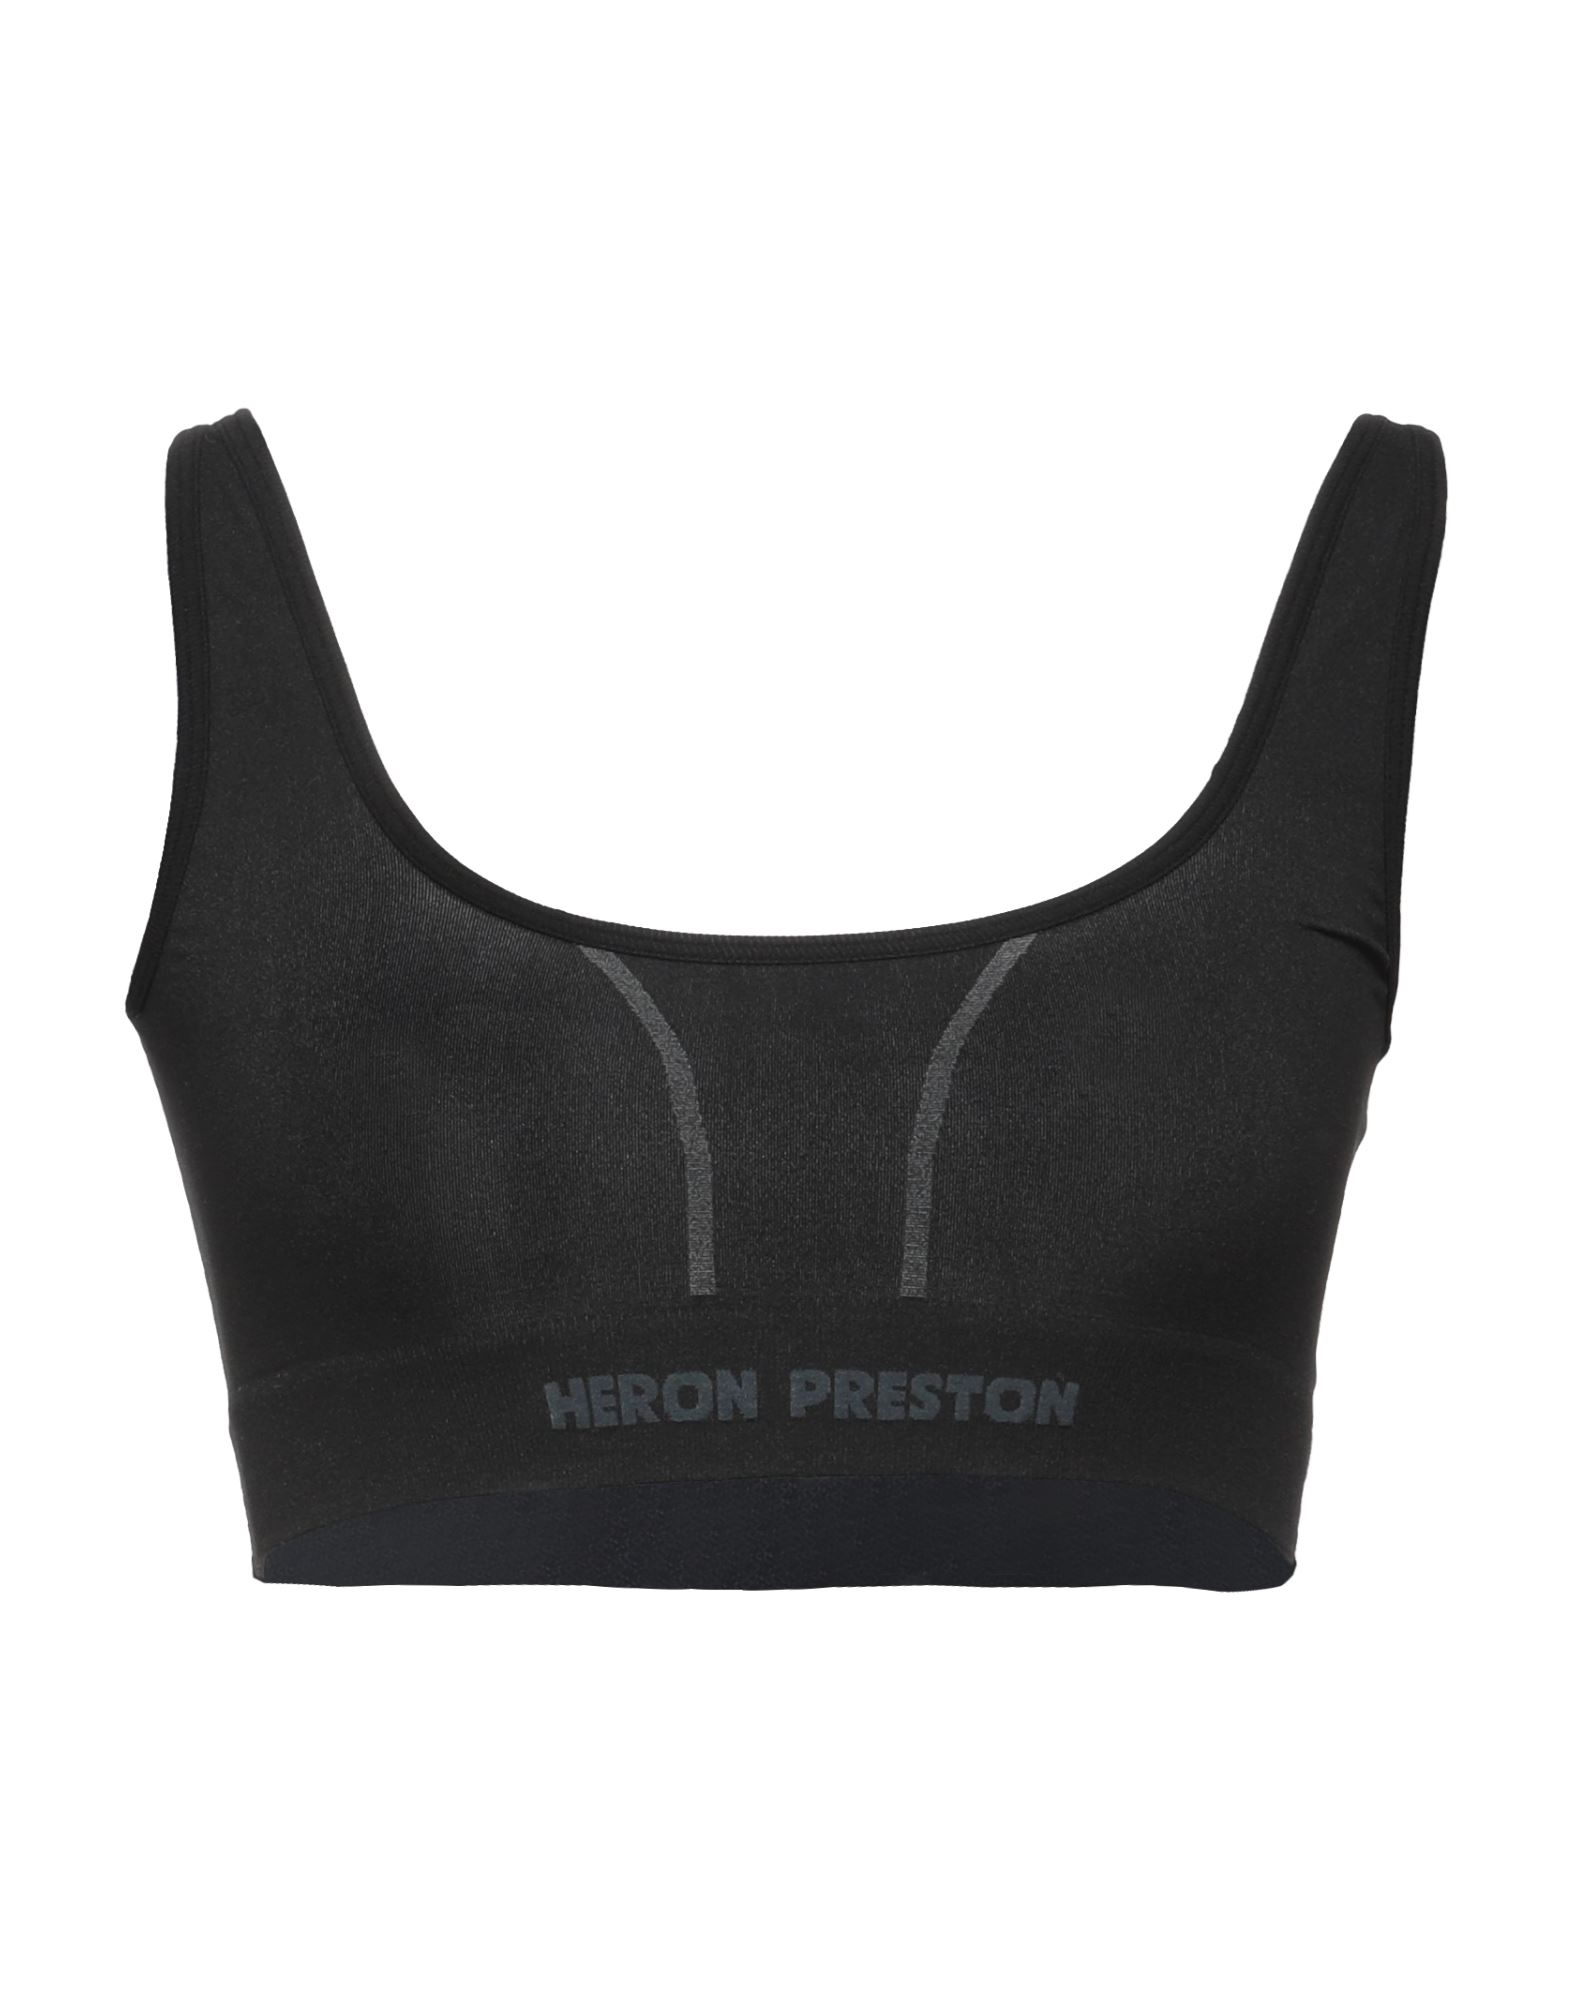 Heron Preston Tops In Black